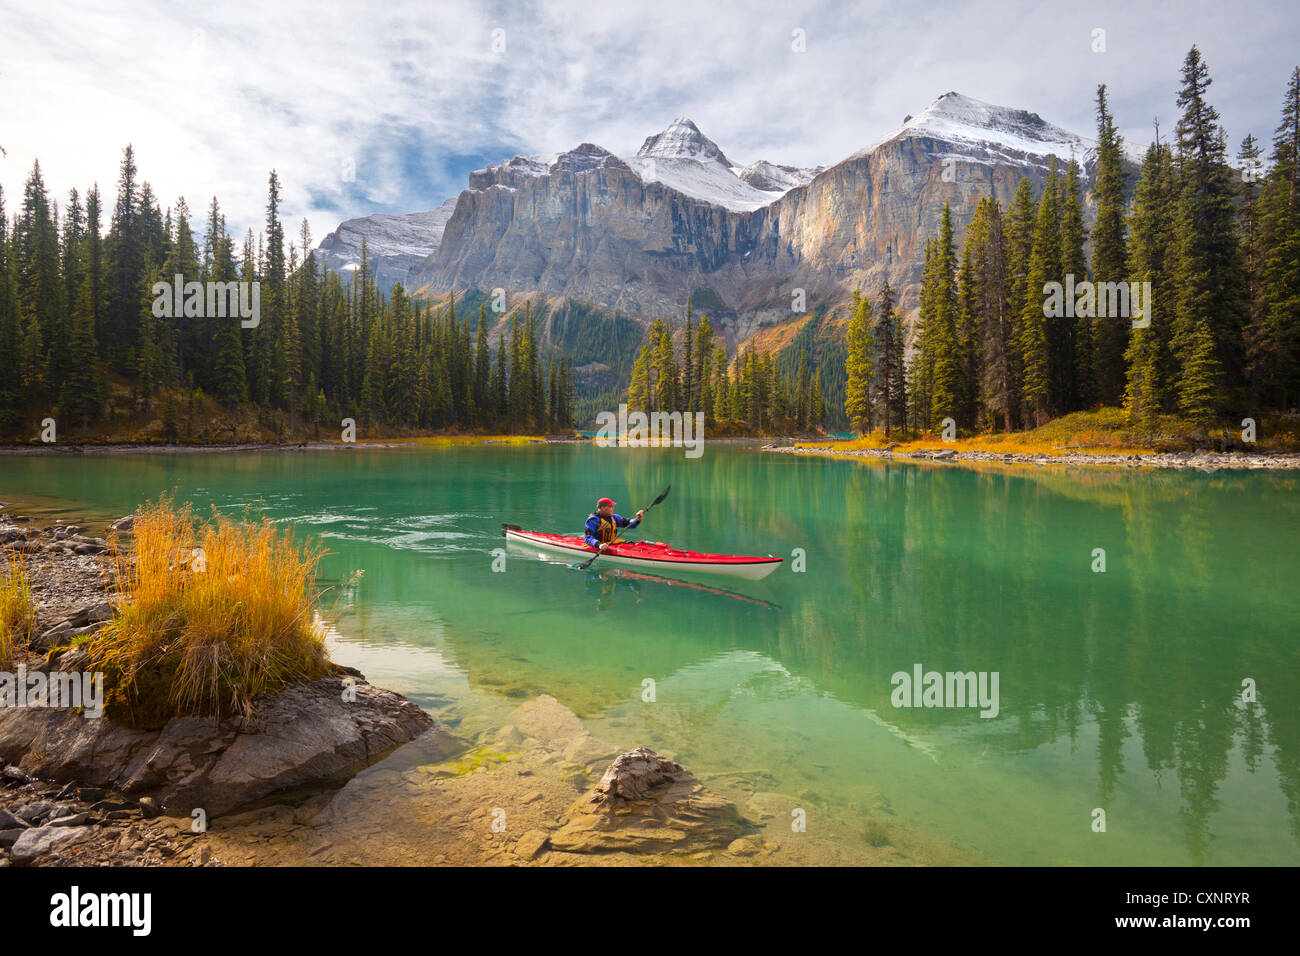 Kanada, Alberta, Jasper-Nationalpark. Ein Mann Meer Kajaks am Maligne Lake, der größte natürliche See in den kanadischen Rocky Mountains (MR) Stockfoto